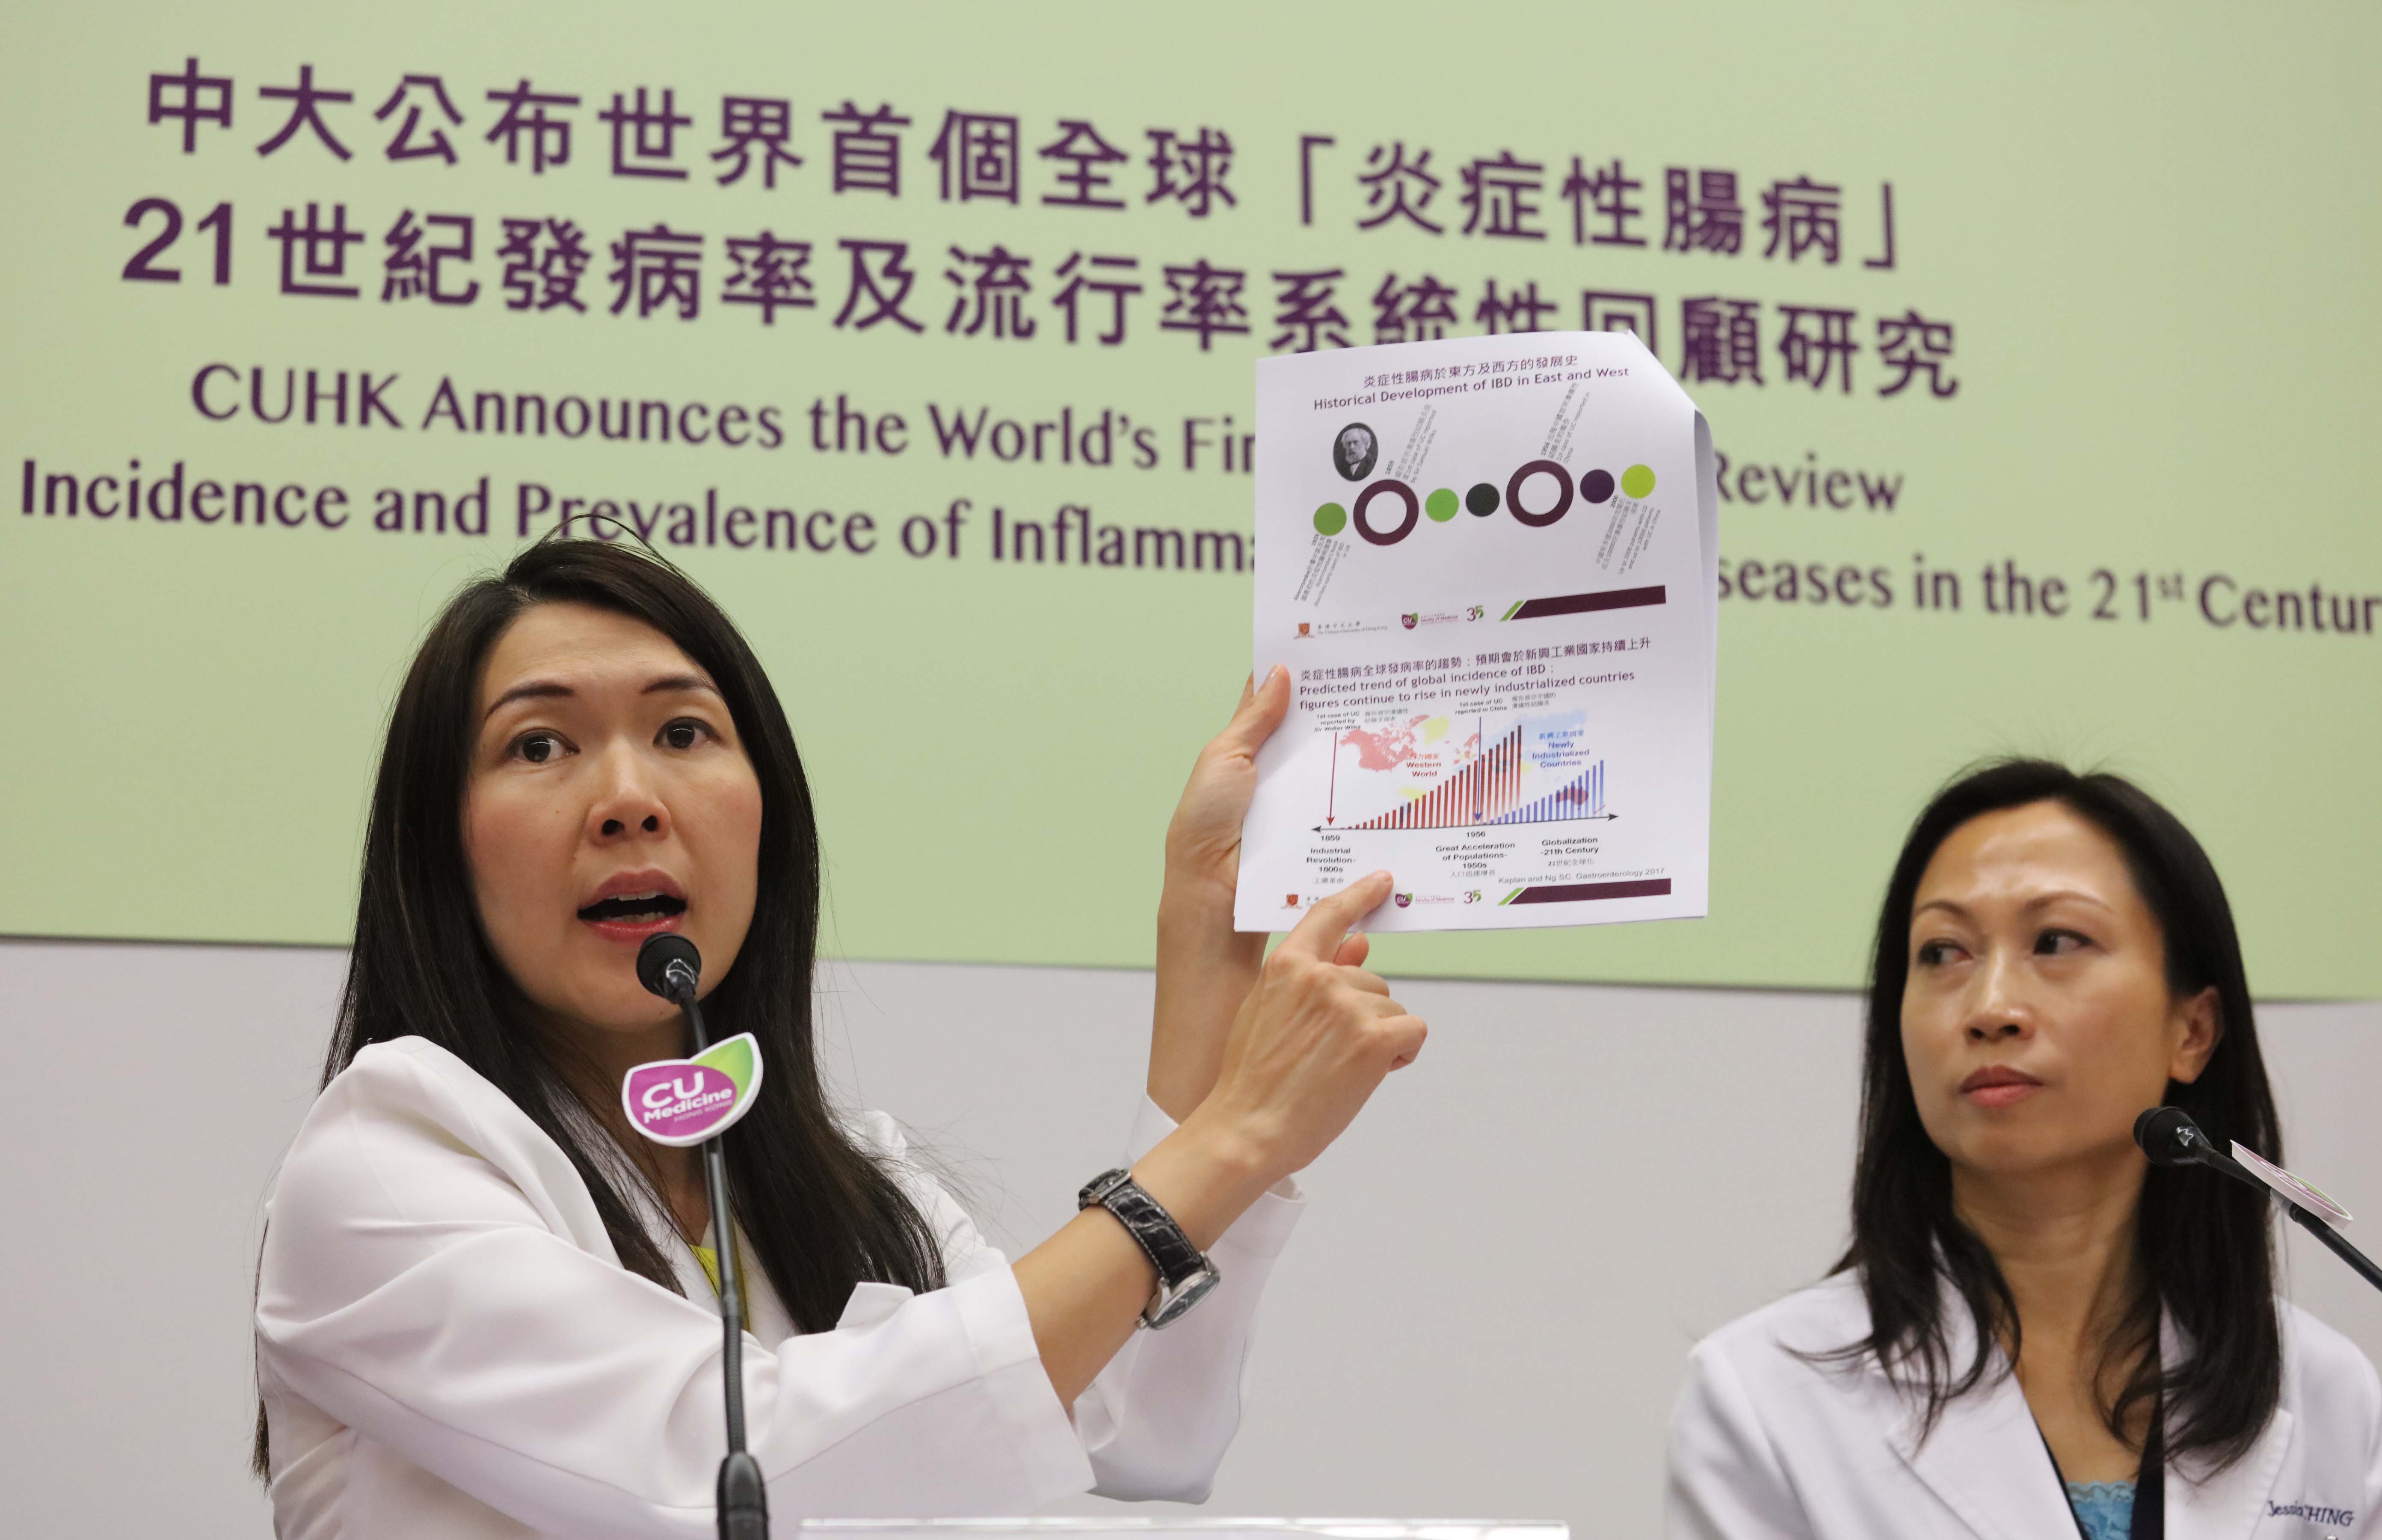 黃秀娟教授（左）指，炎症性腸病過往於西方國家較為常見，但近年亞洲地區的發病率卻有顯著上升趨勢，反映此症對全球公共衞生健康都造成威脅。